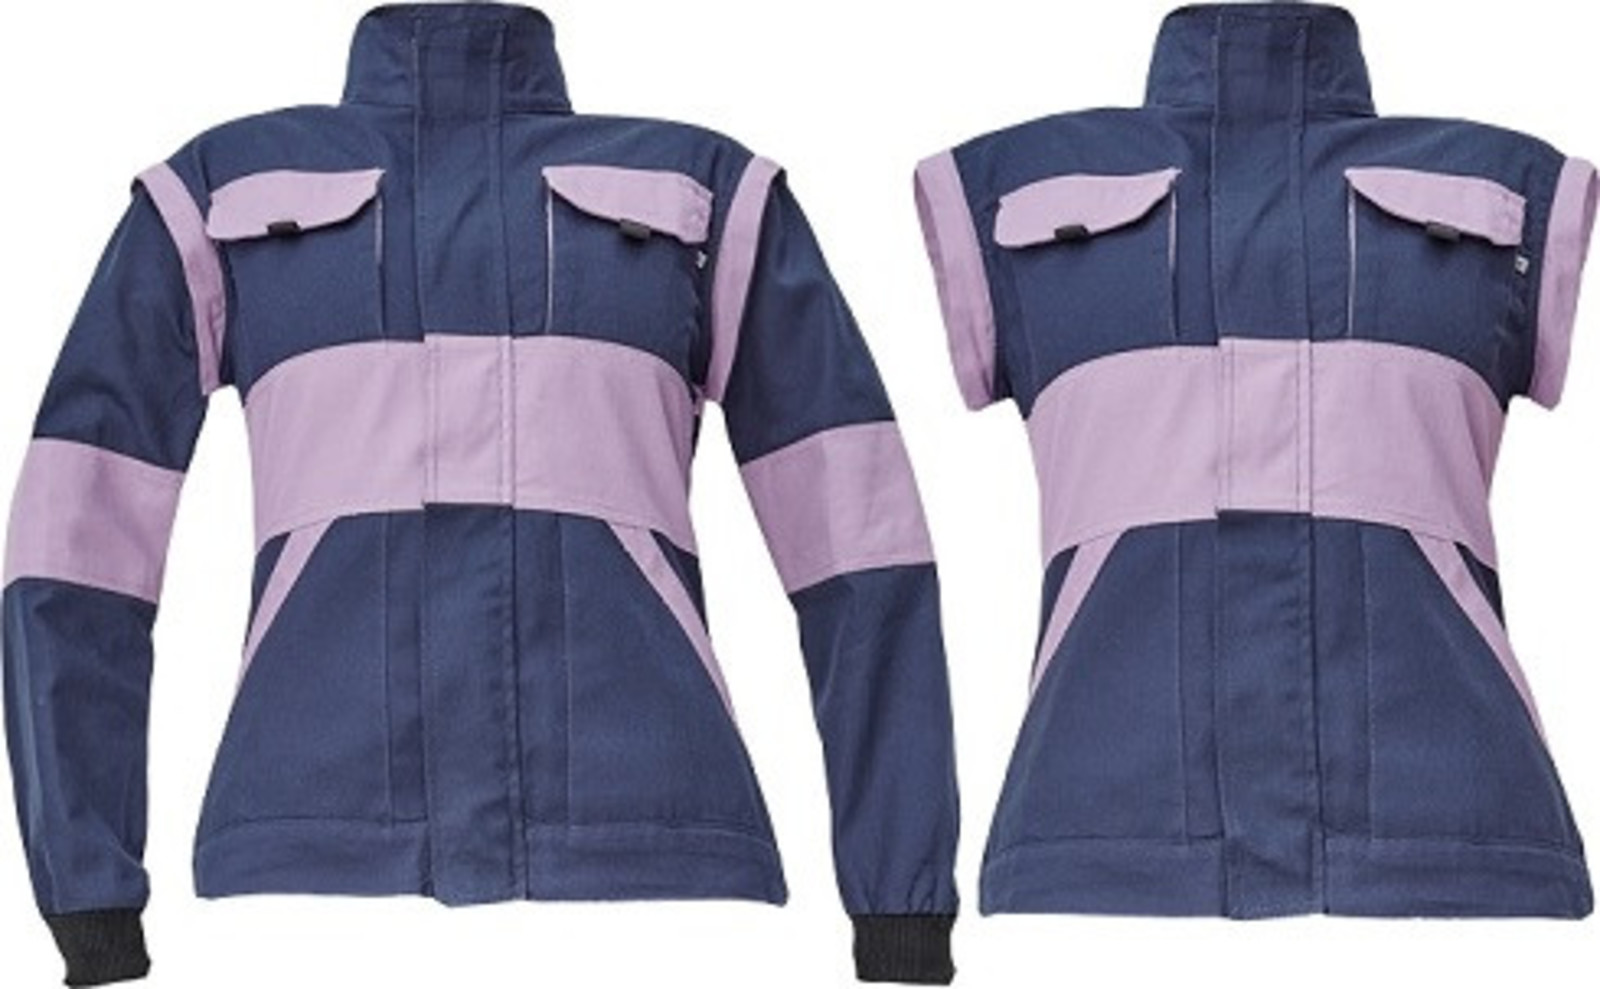 Dámska bavlnená montérková bunda Cerva Max Neo Lady 2v1 - veľkosť: 40, farba: navy lila